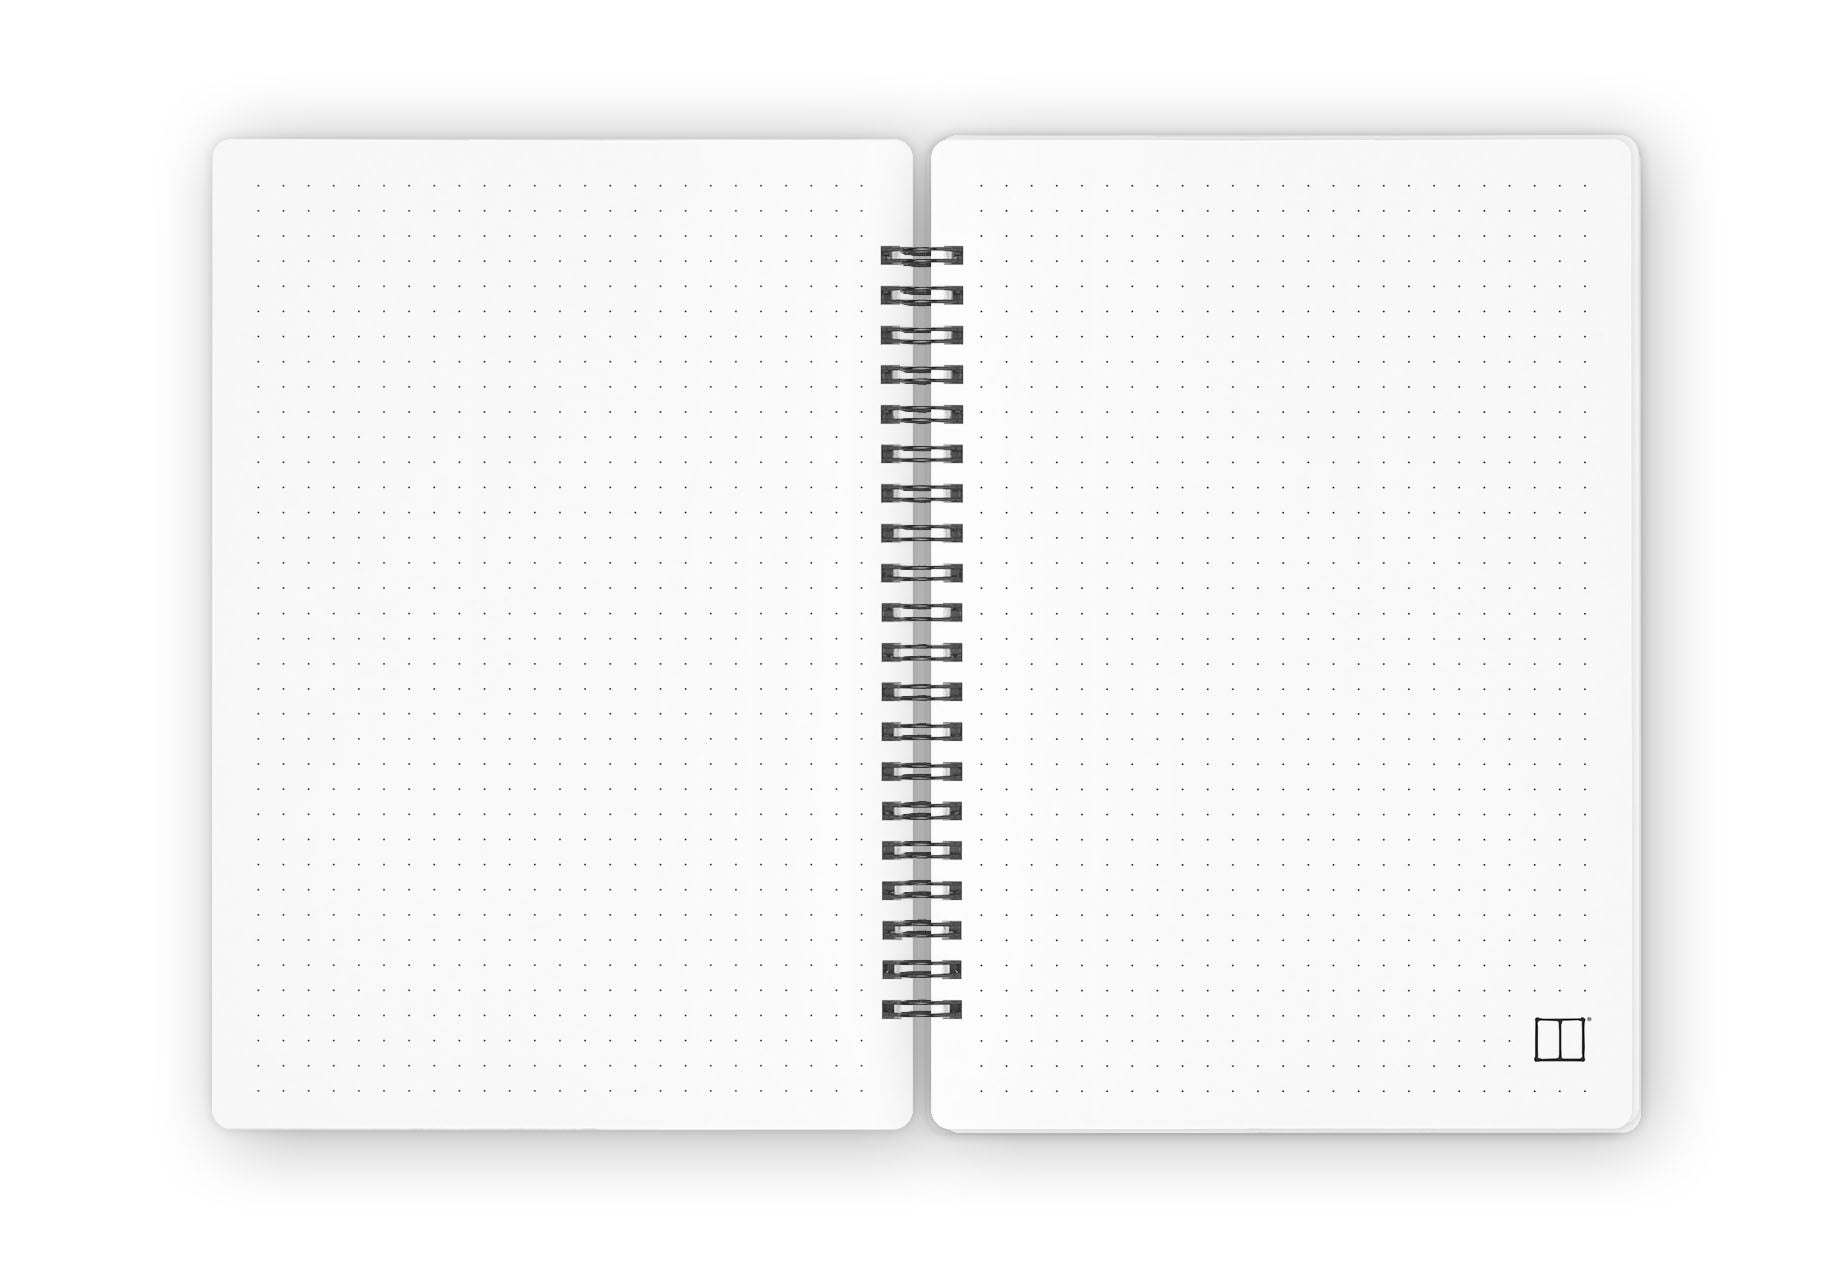 Journal Set | Pink & White SketchBook Stationery